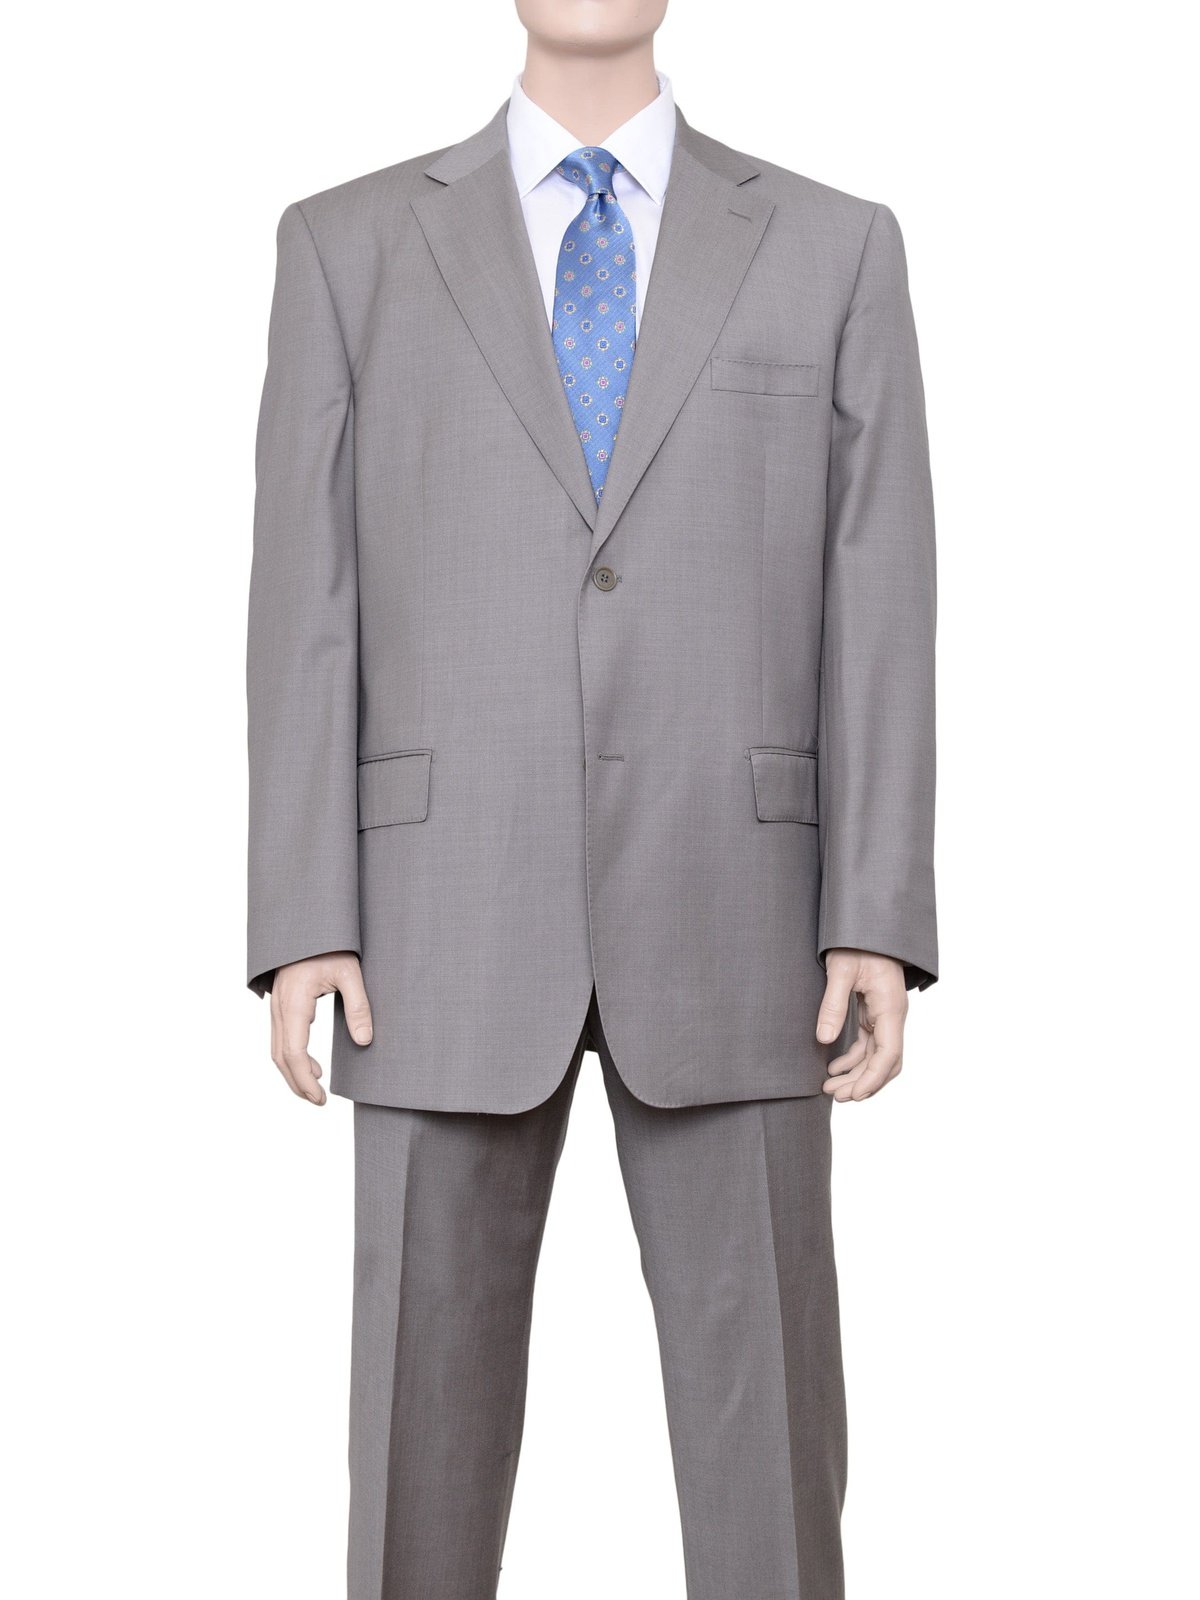 Label E SUITS 48L Label E Mens Solid Tan Classic Fit 100% Wool 2 Piece Suit